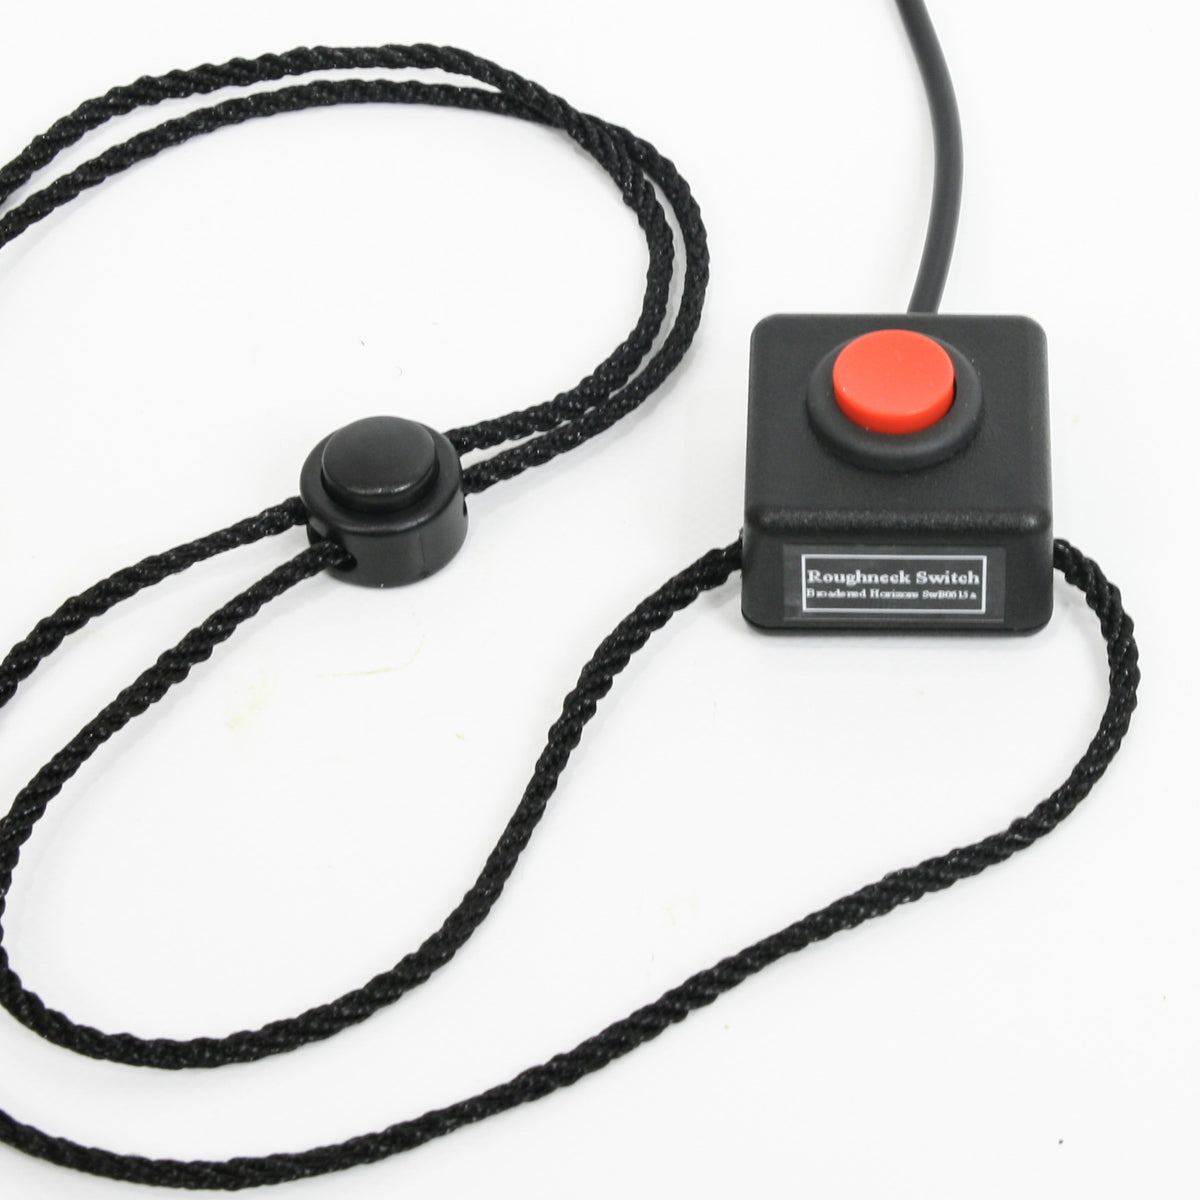 Interrupteur de bouton-poussoir unique Roughneck pour le menton, le poing, le pied ou la tête